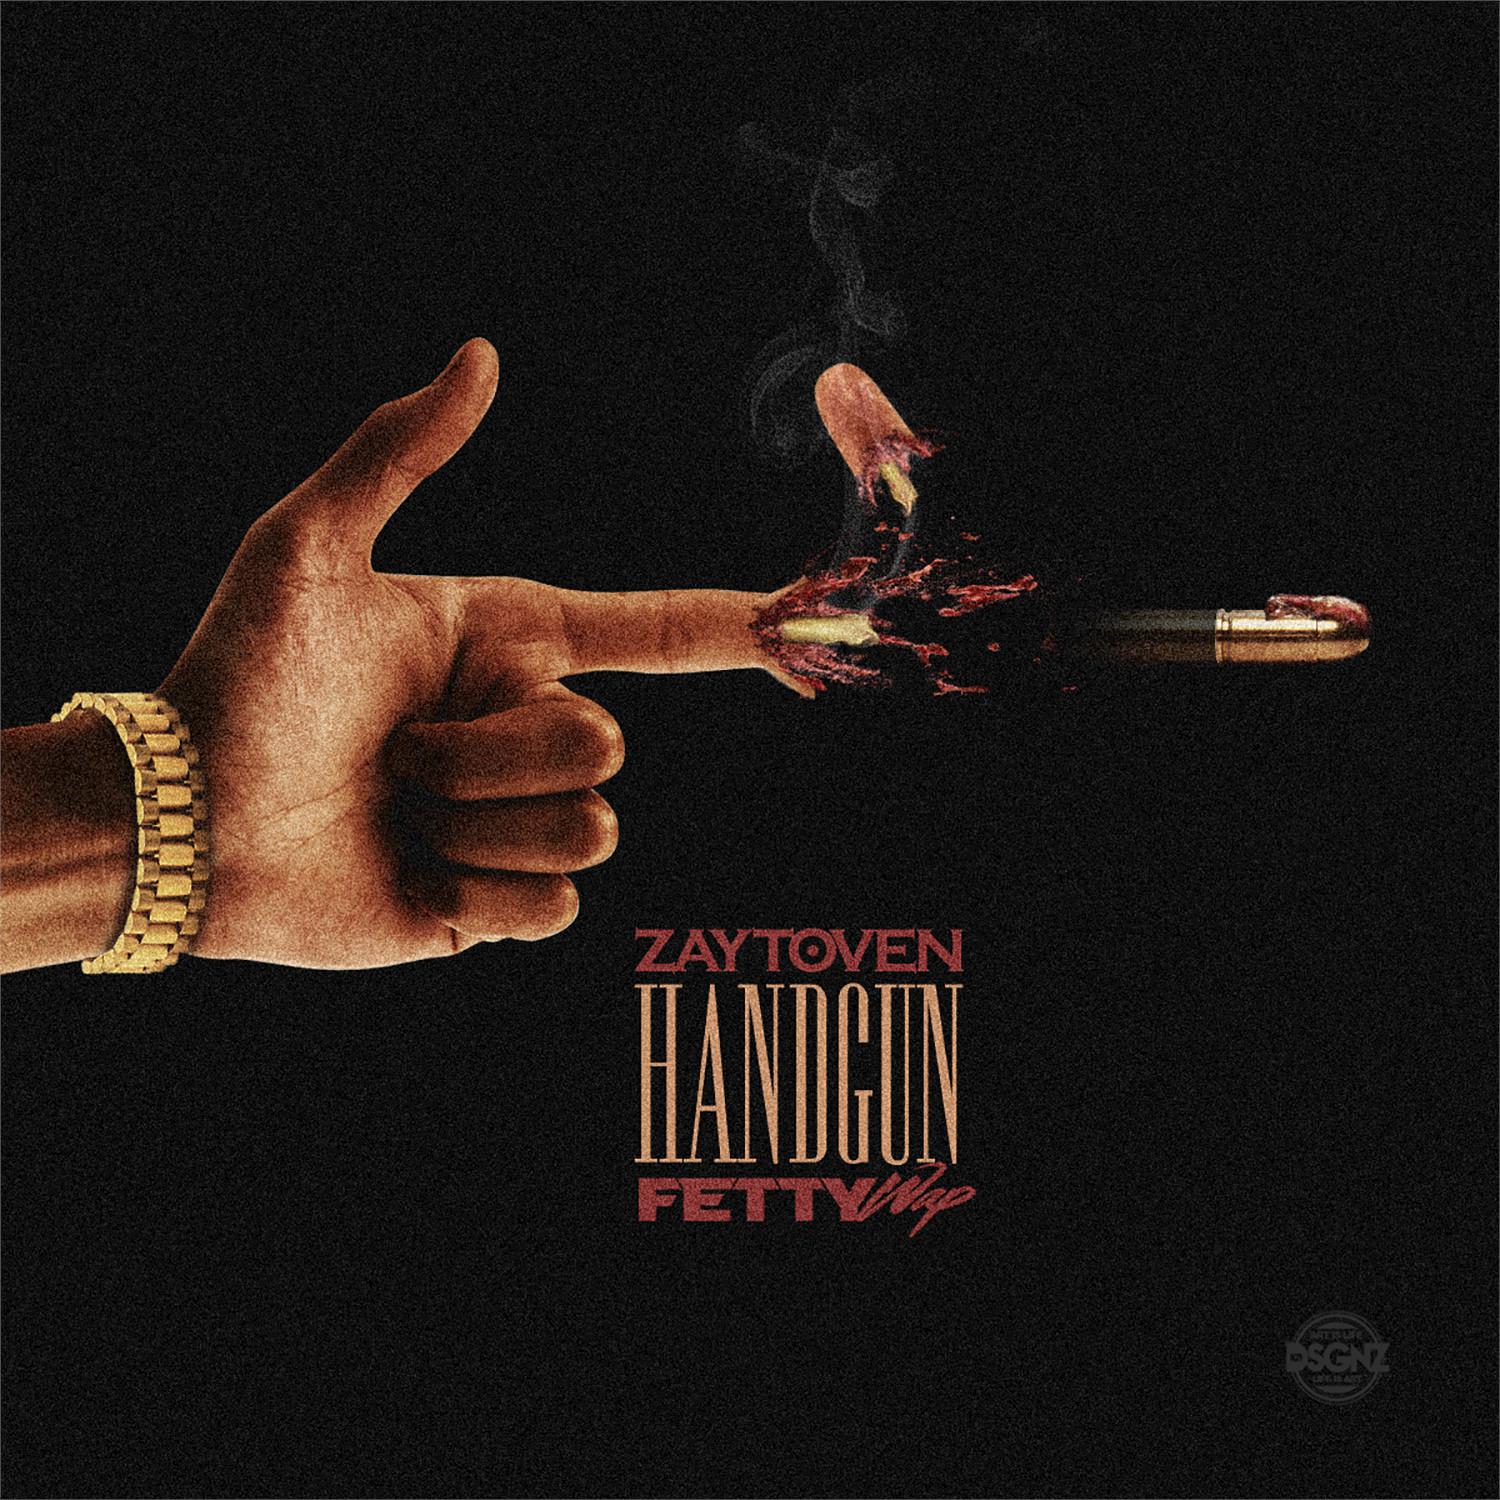 Handgun (feat. Fetty Wap)